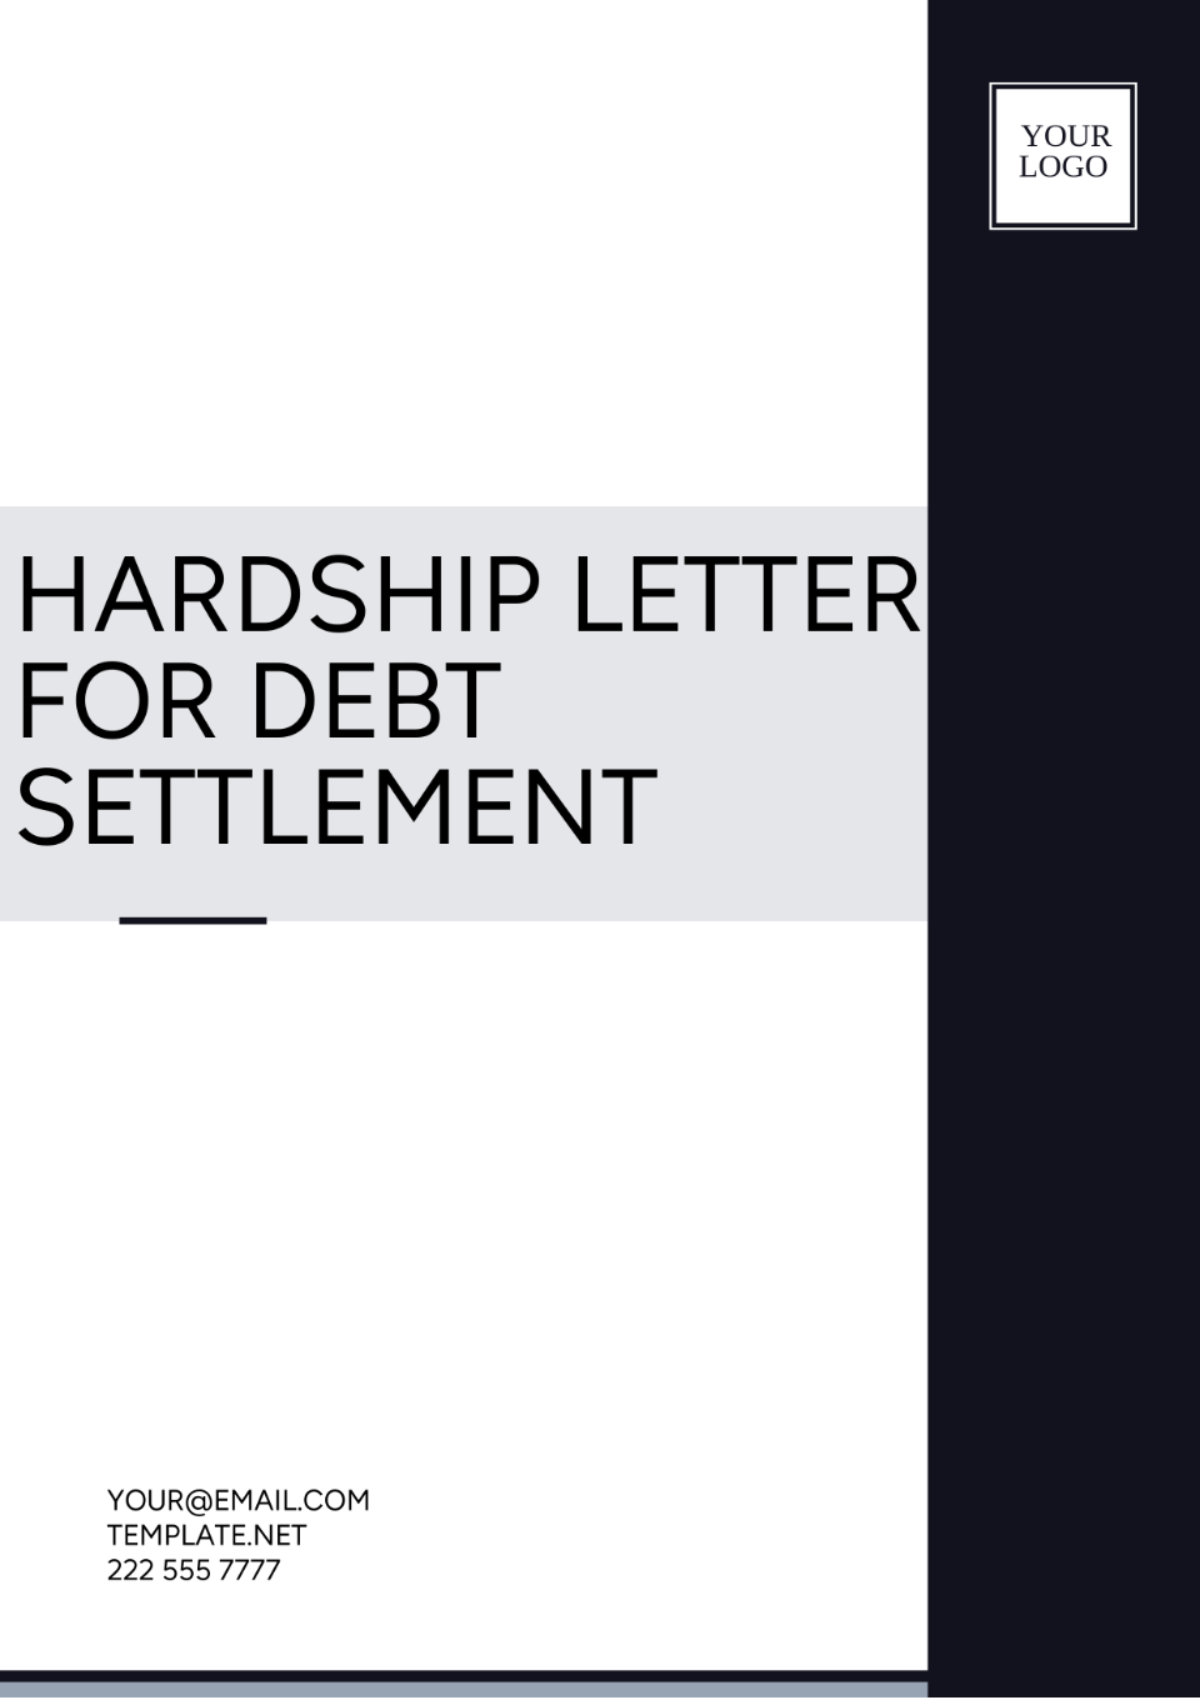 Free Hardship Letter For Debt Settlement Template